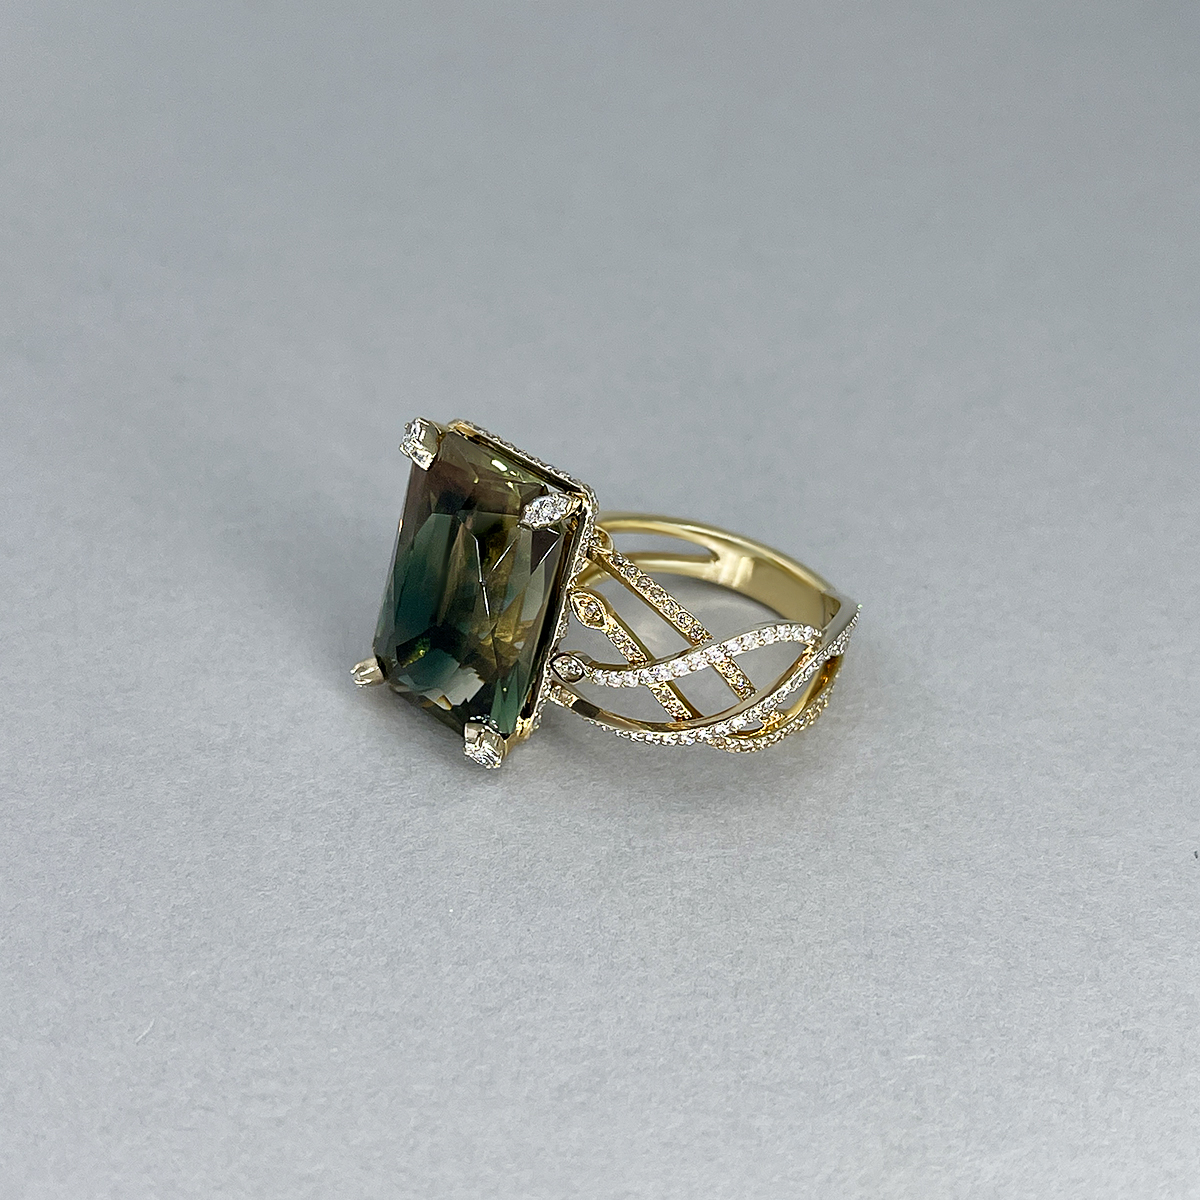 Авторское кольцо с орегонским солнечным камнем и бриллиантами из желтого золота 585 пробы, фото № 2